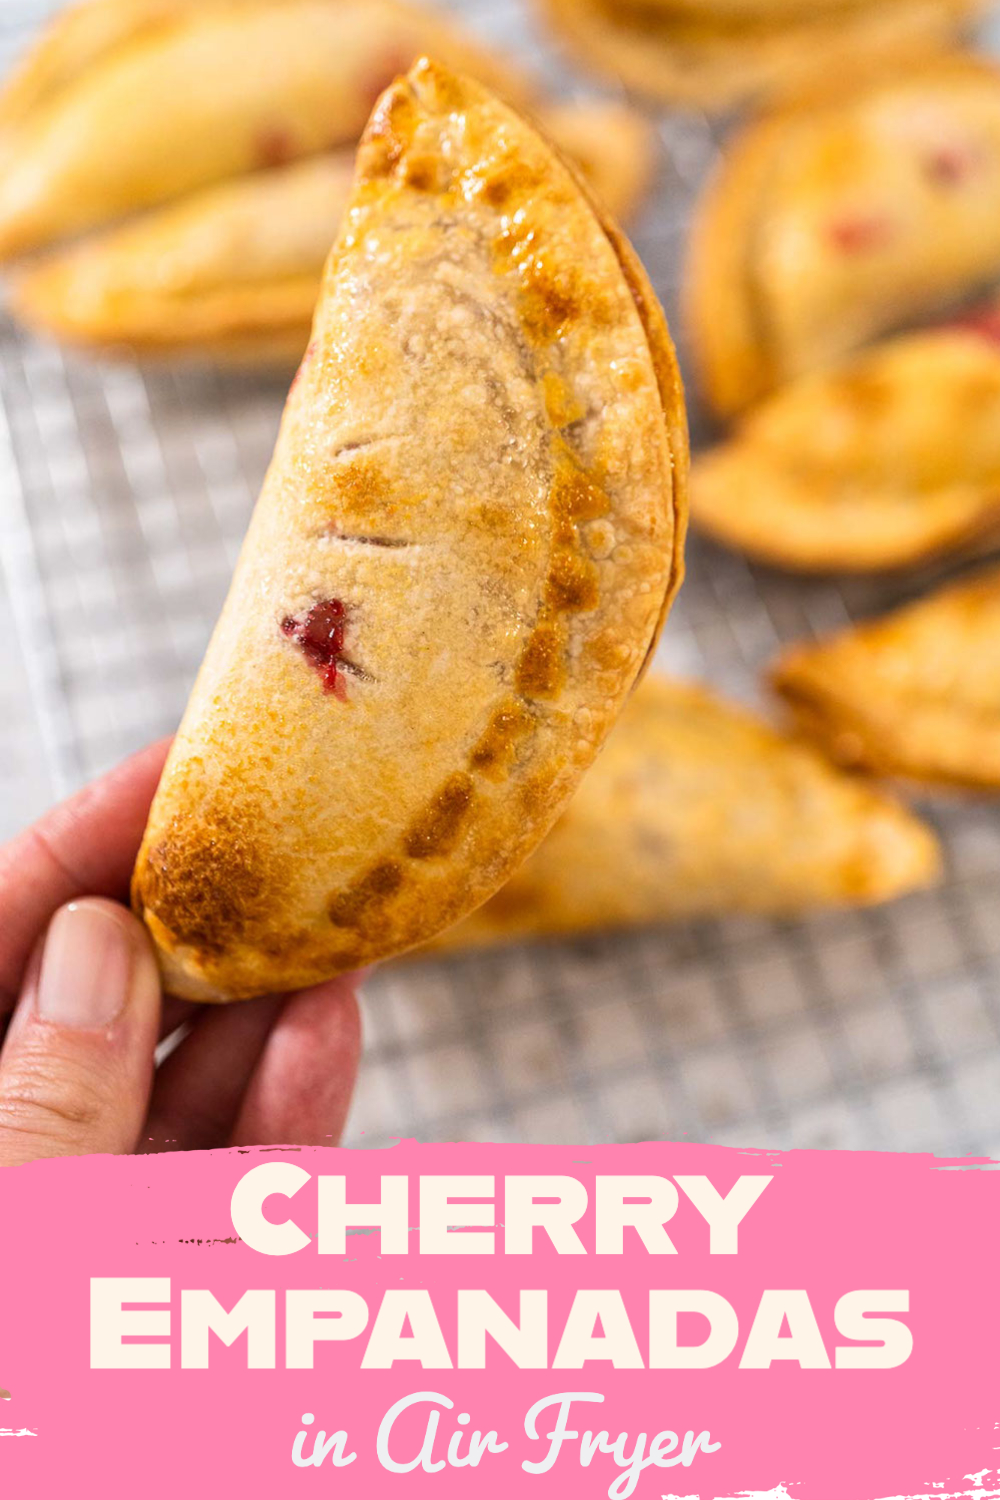 Cherry Empanadas in Air Fryer